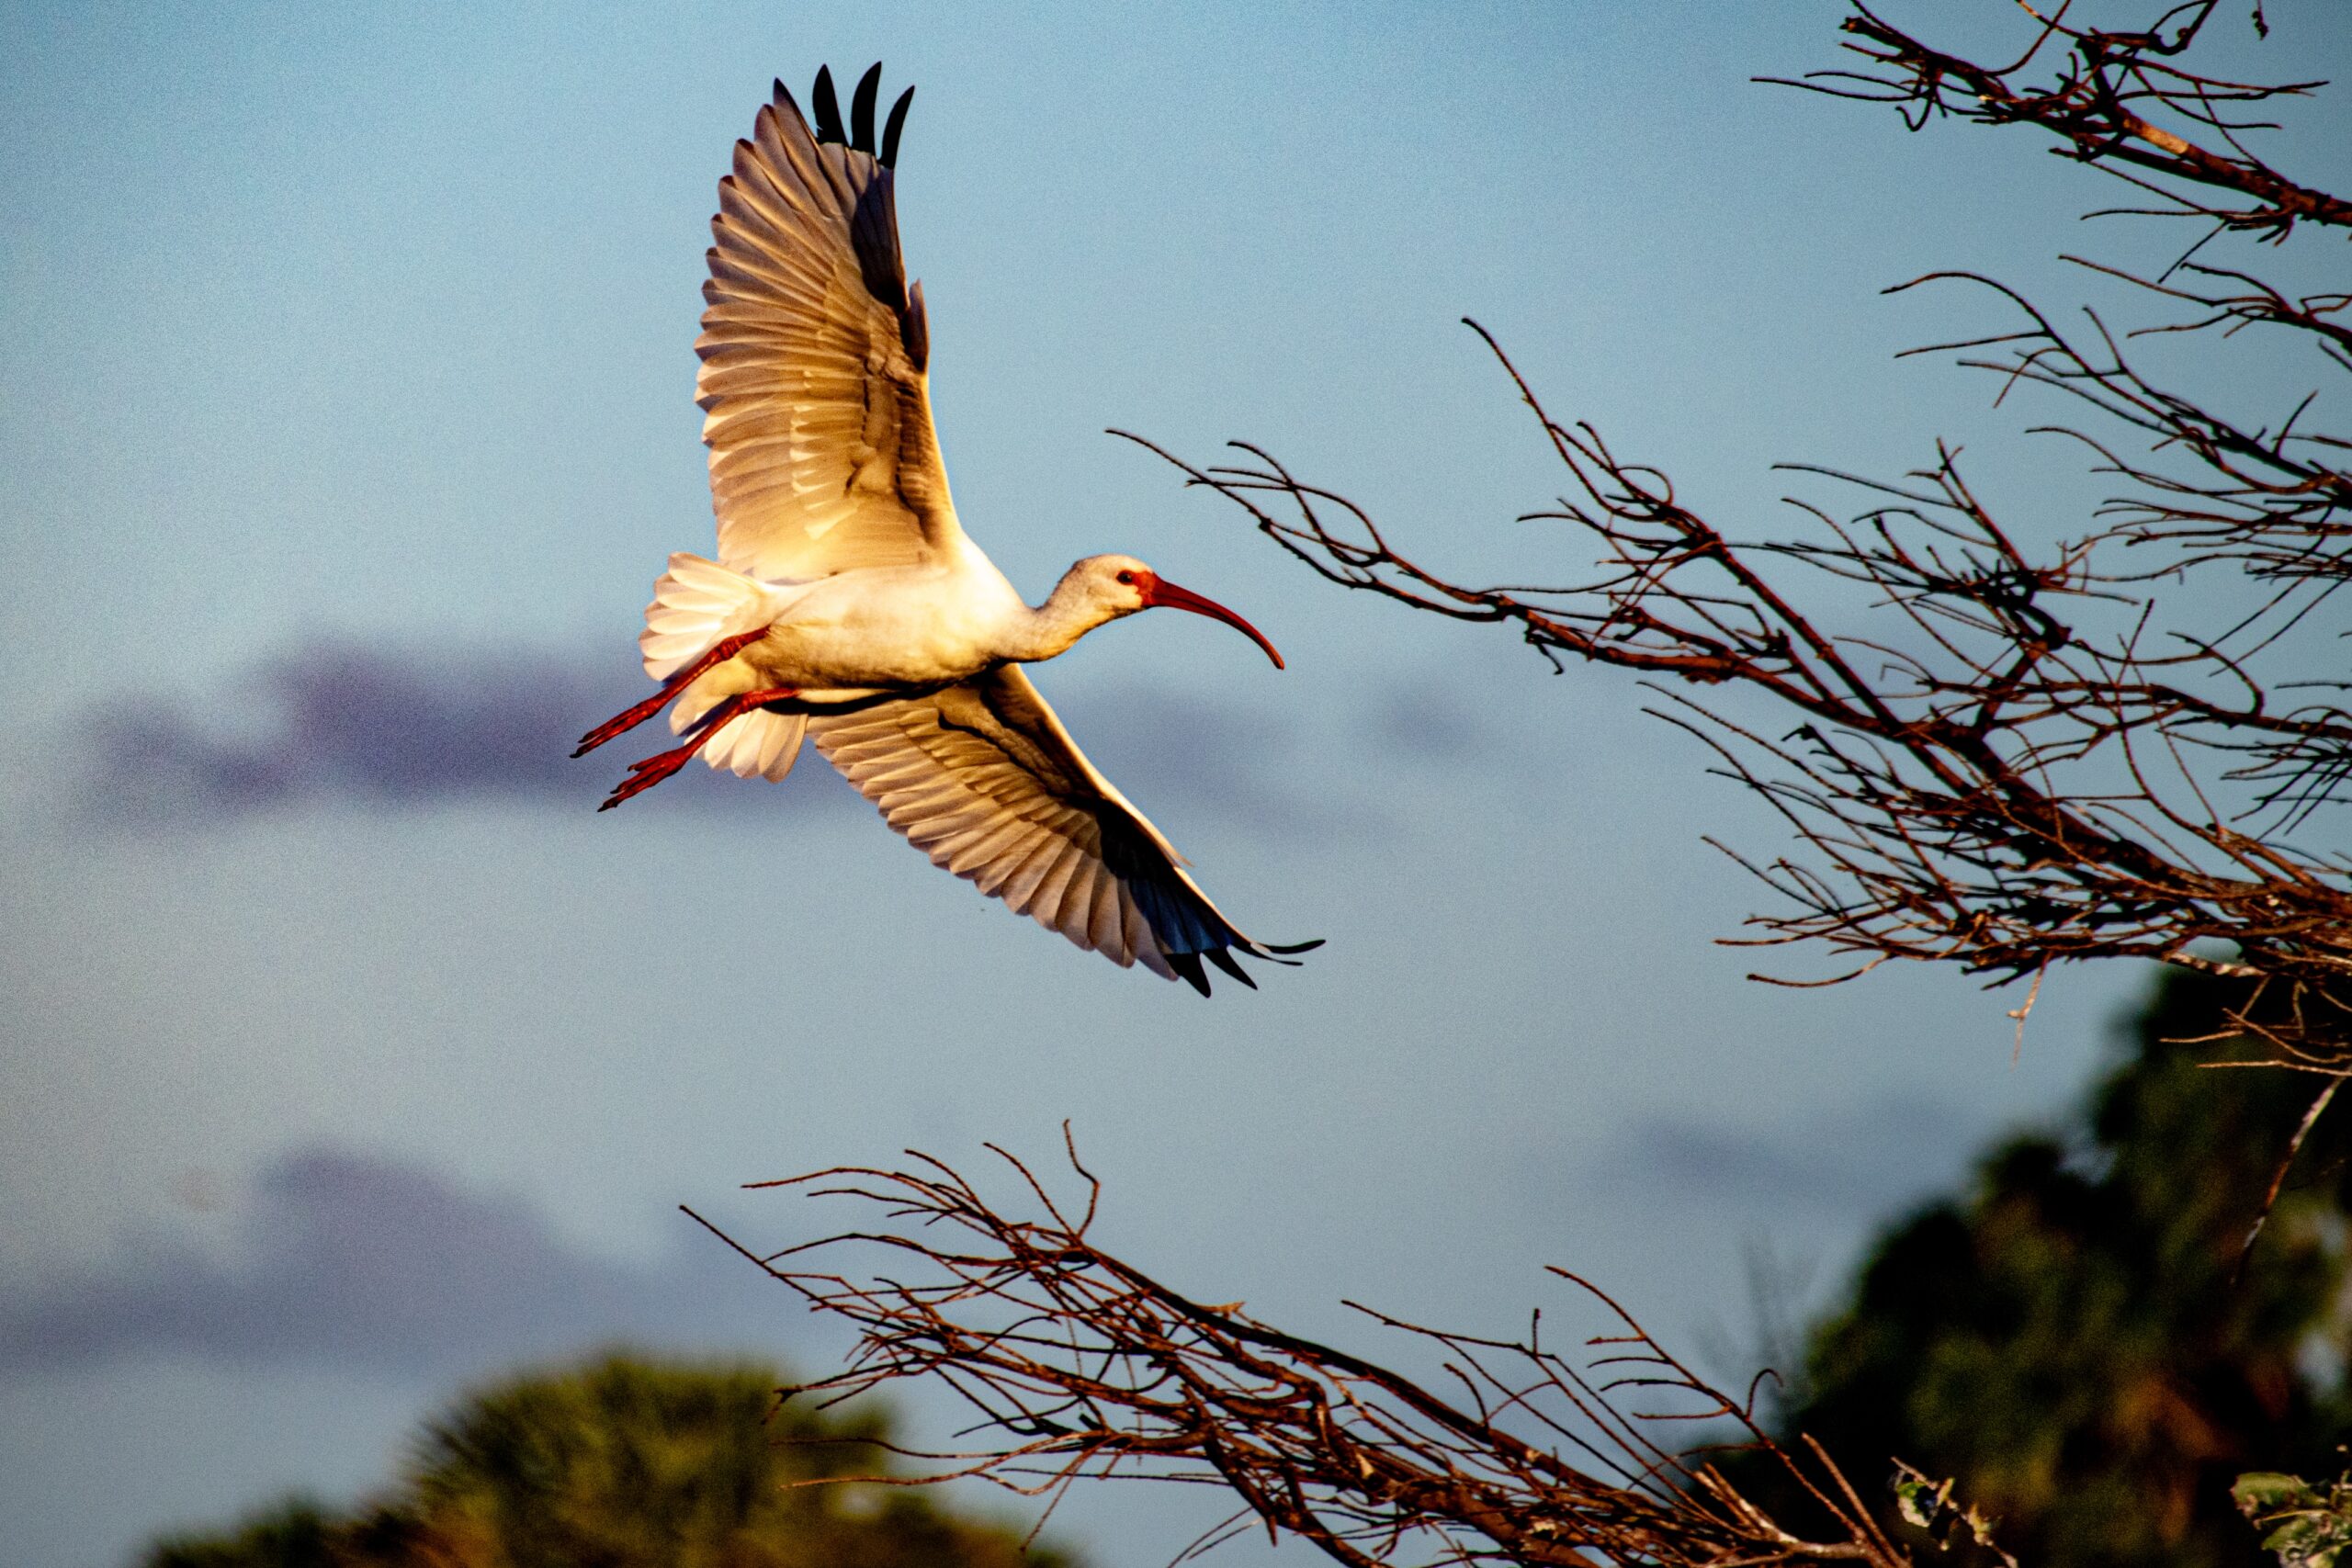 A stork flies through the air